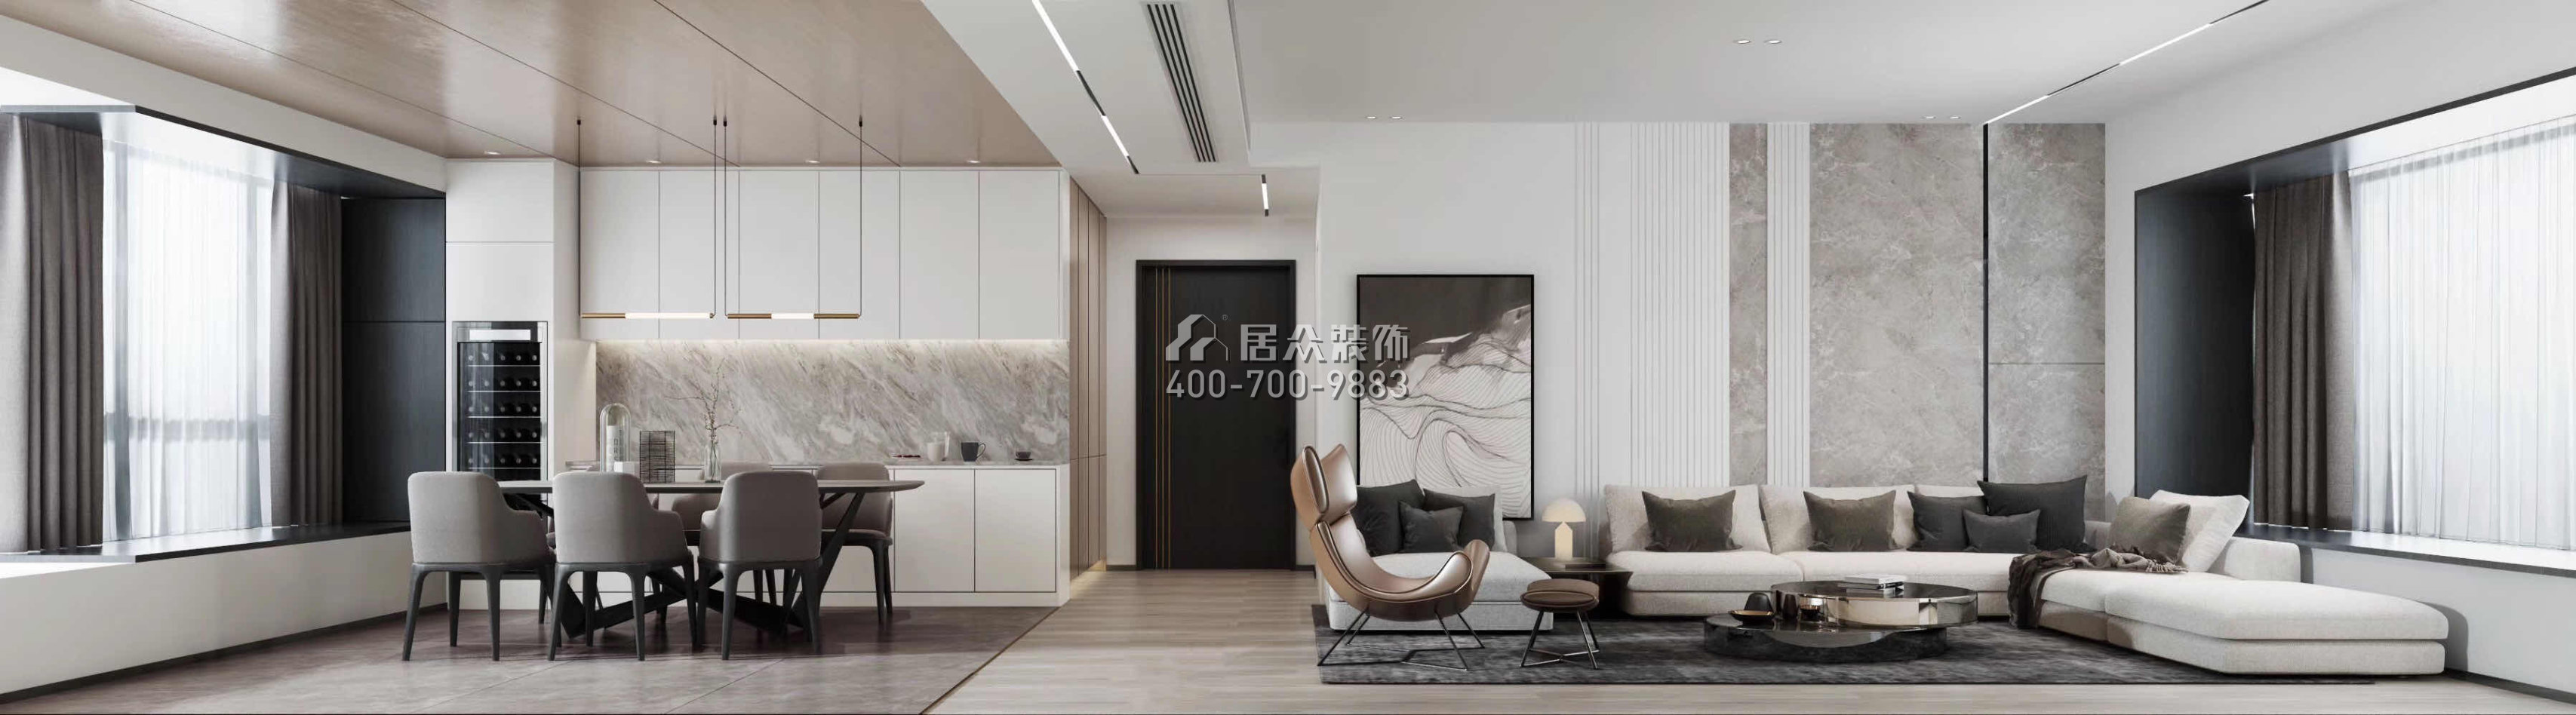 香山美墅五期171平方米中式风格平层户型客厅装修效果图